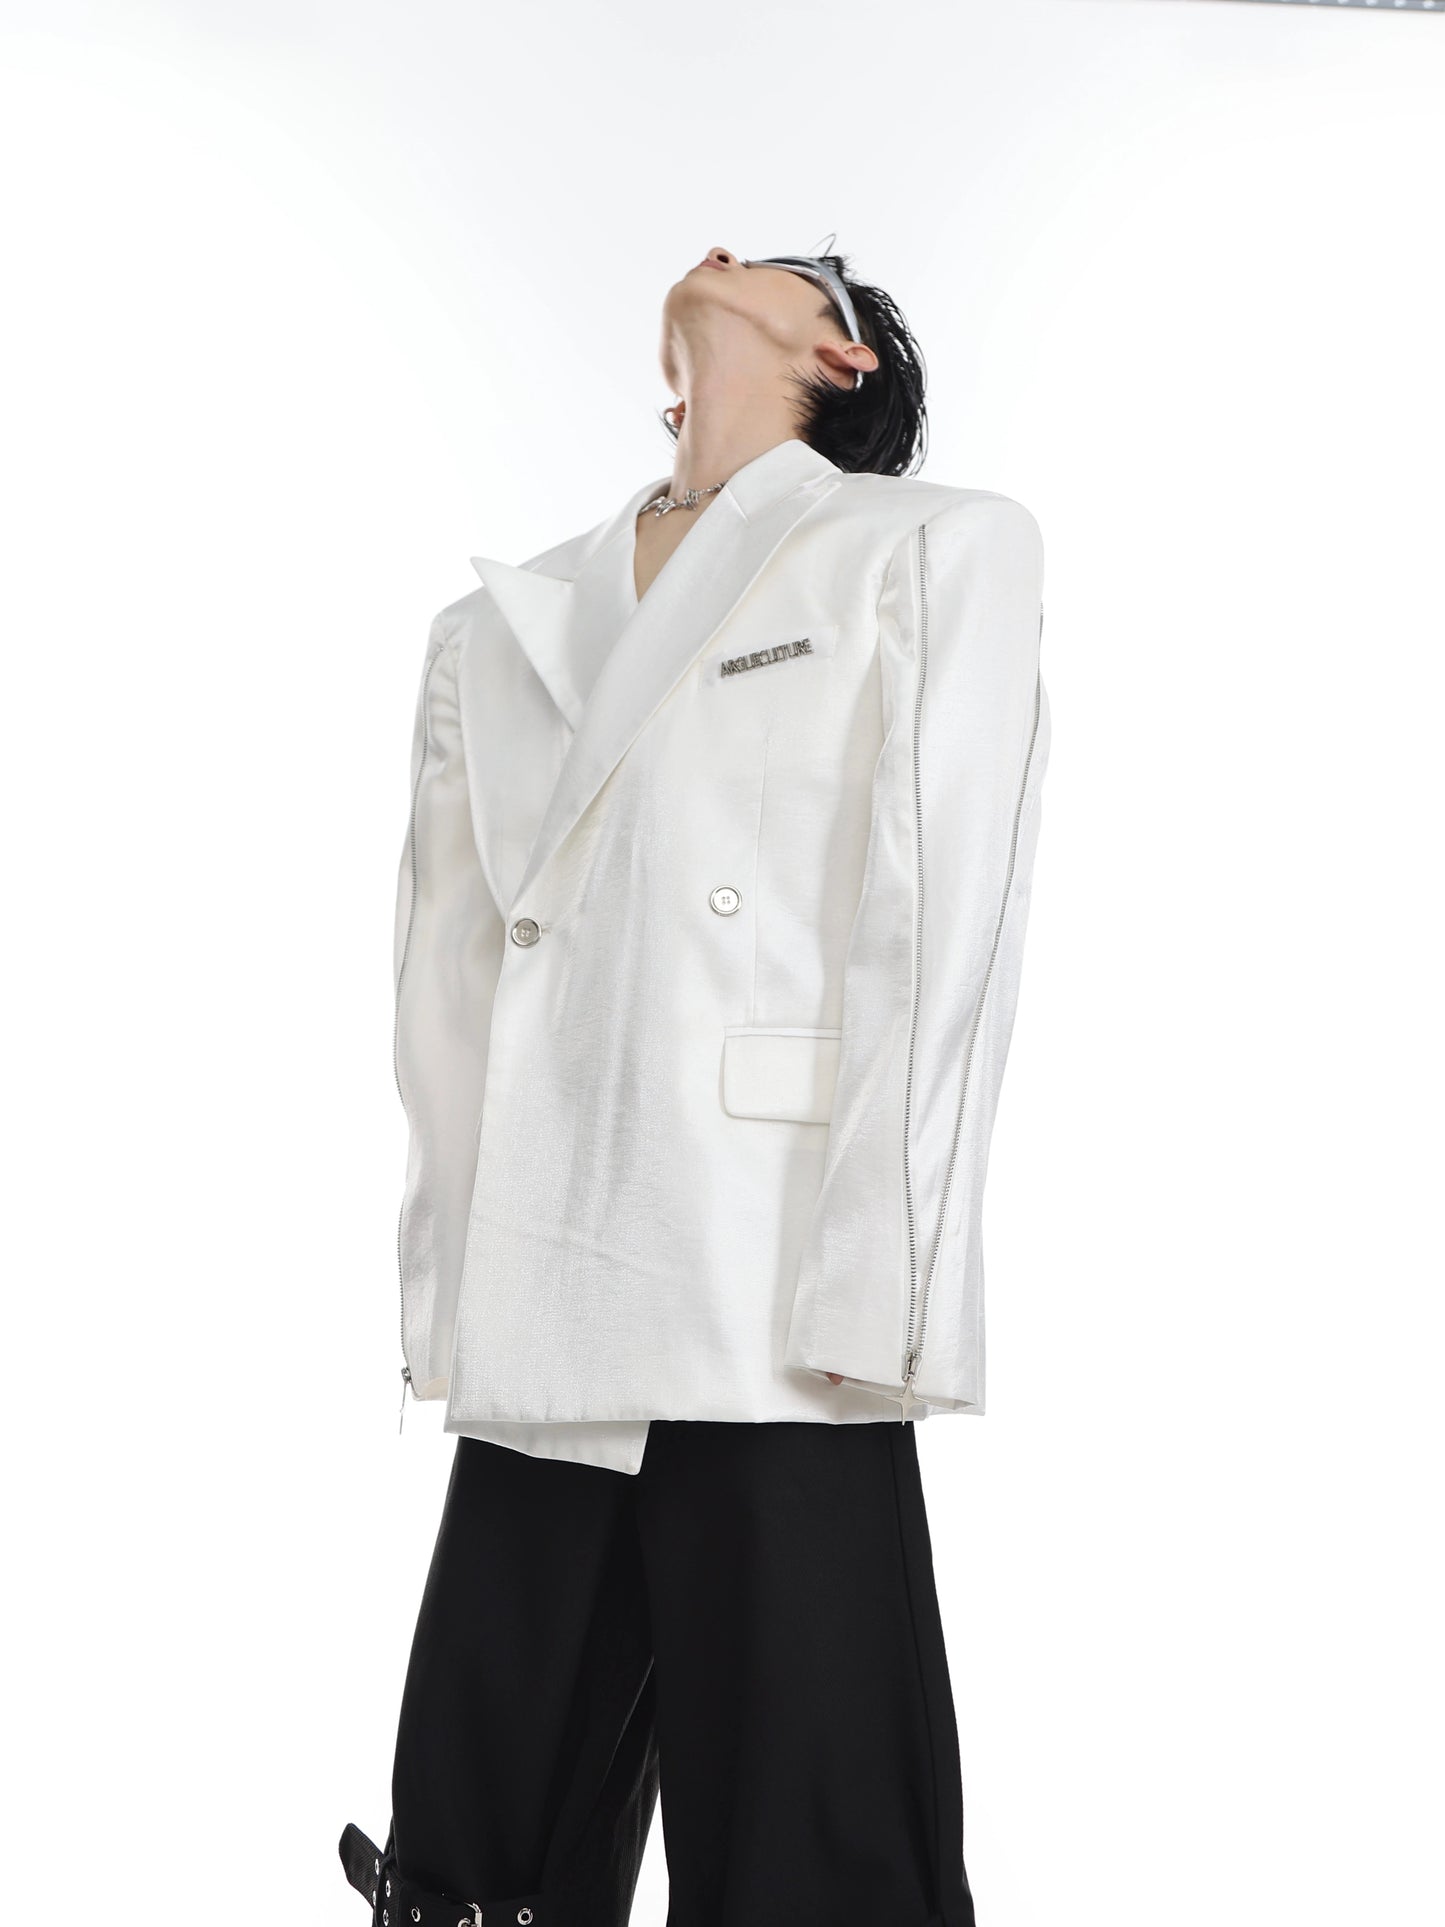 CulturE niche deconstruction liquid streamer shoulder pad silhouette suit jacket metal zipper design suit men